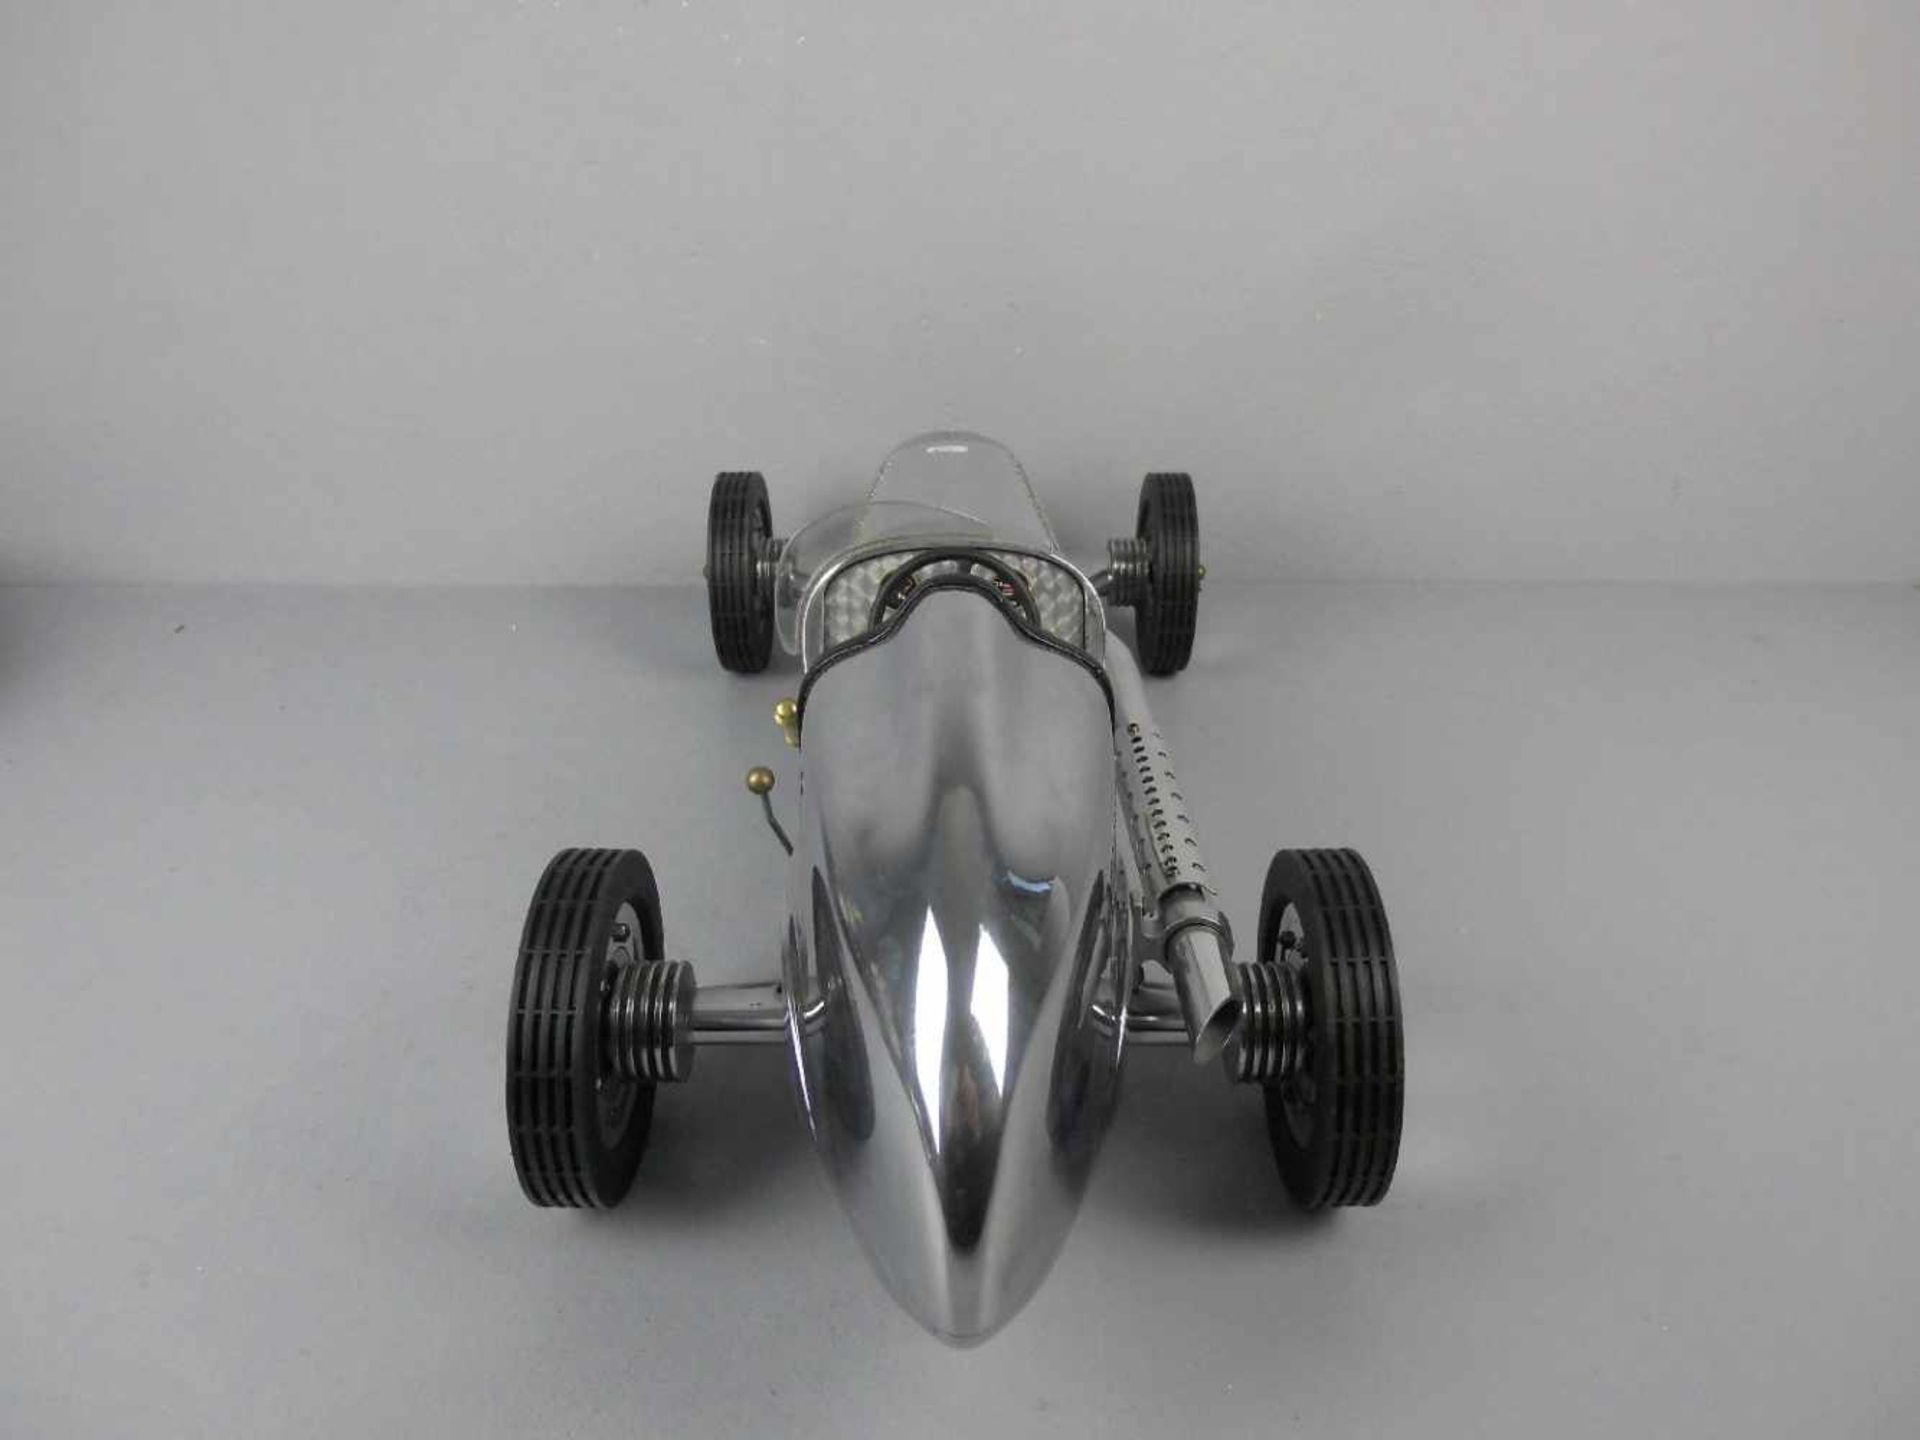 MODELL - AUTO: Mercedes Silberpfeil W 25 von 1934 / Grand Prix Model Car, unter dem Stand gemarkt " - Bild 3 aus 6